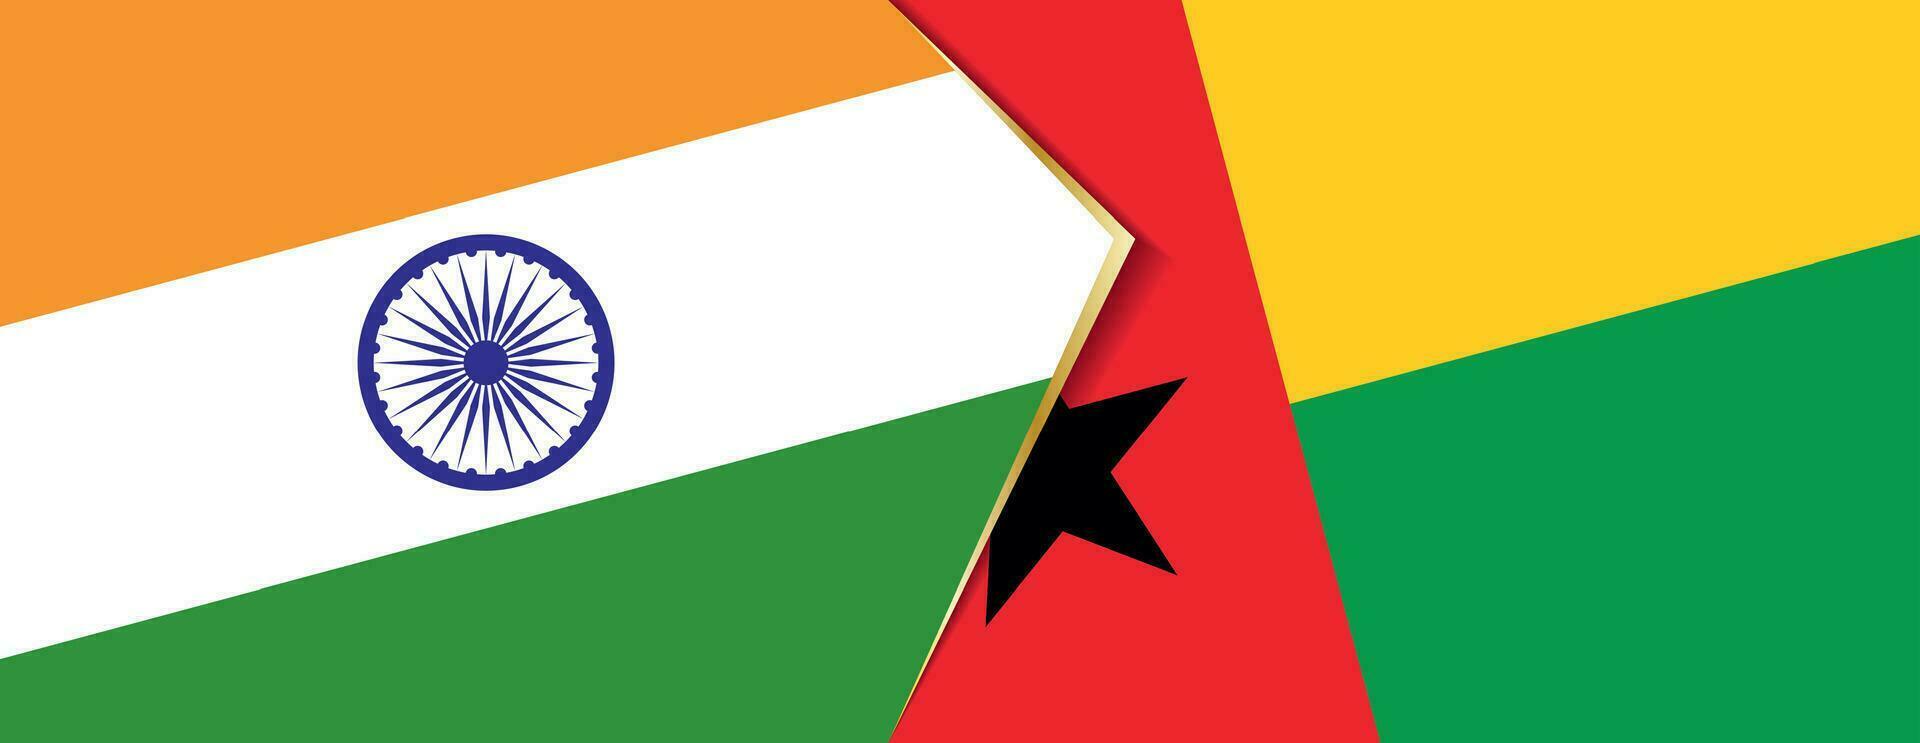 Indien und Guinea-Bissau Flaggen, zwei Vektor Flaggen.